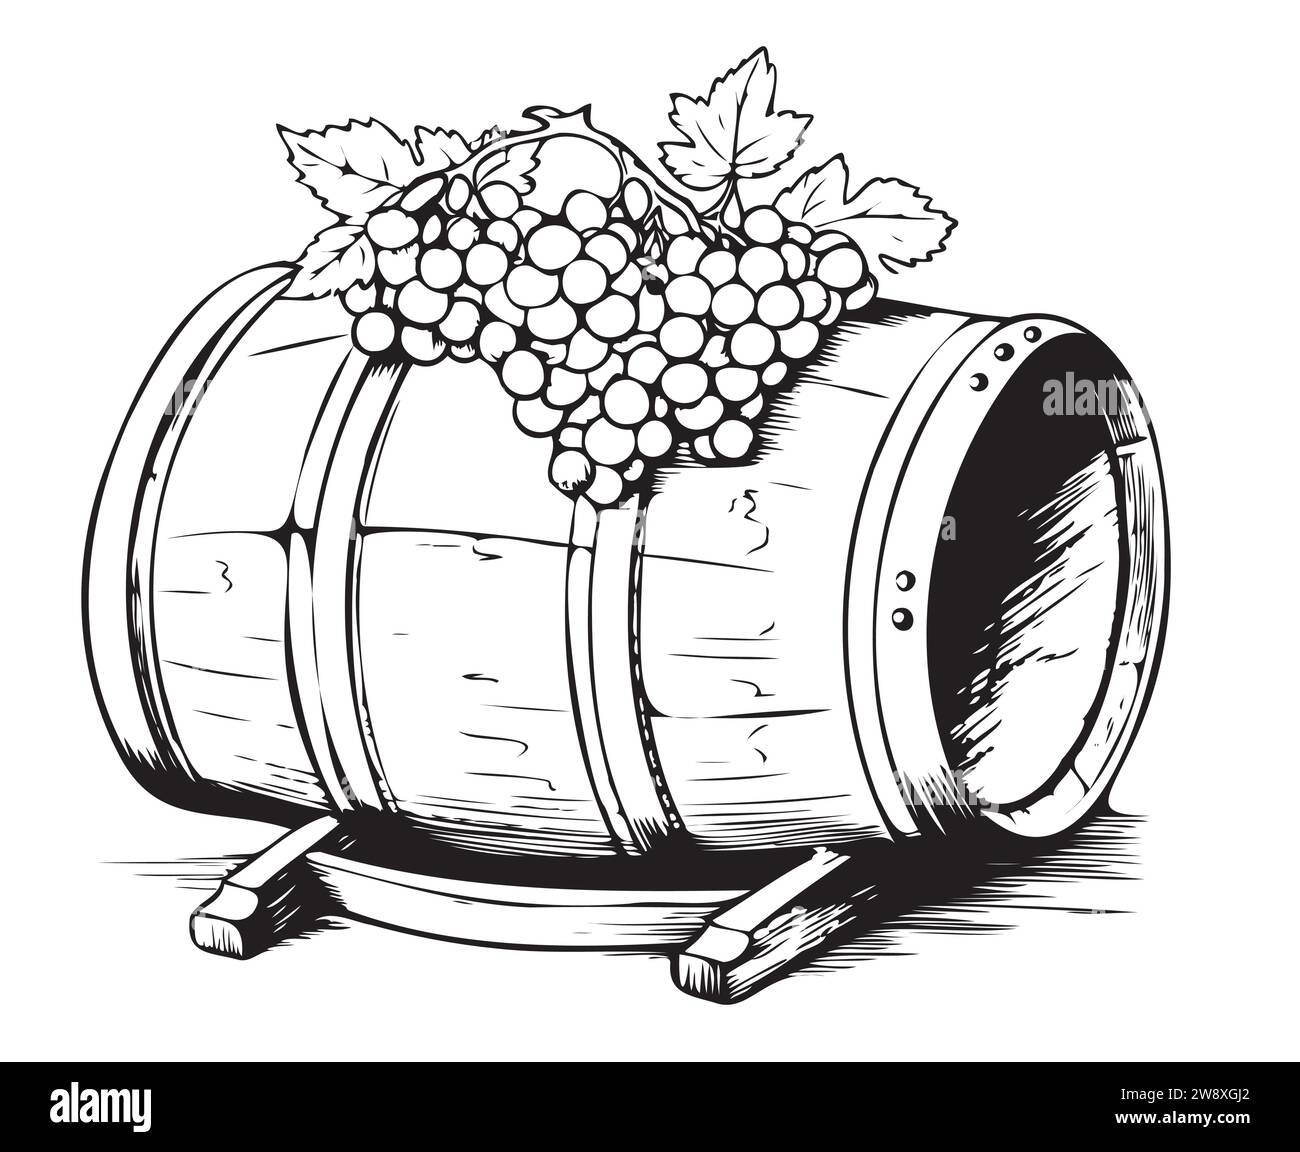 Wein oder Bier Faß auf weißem Hintergrund. Vector Illustration. Stock Vektor